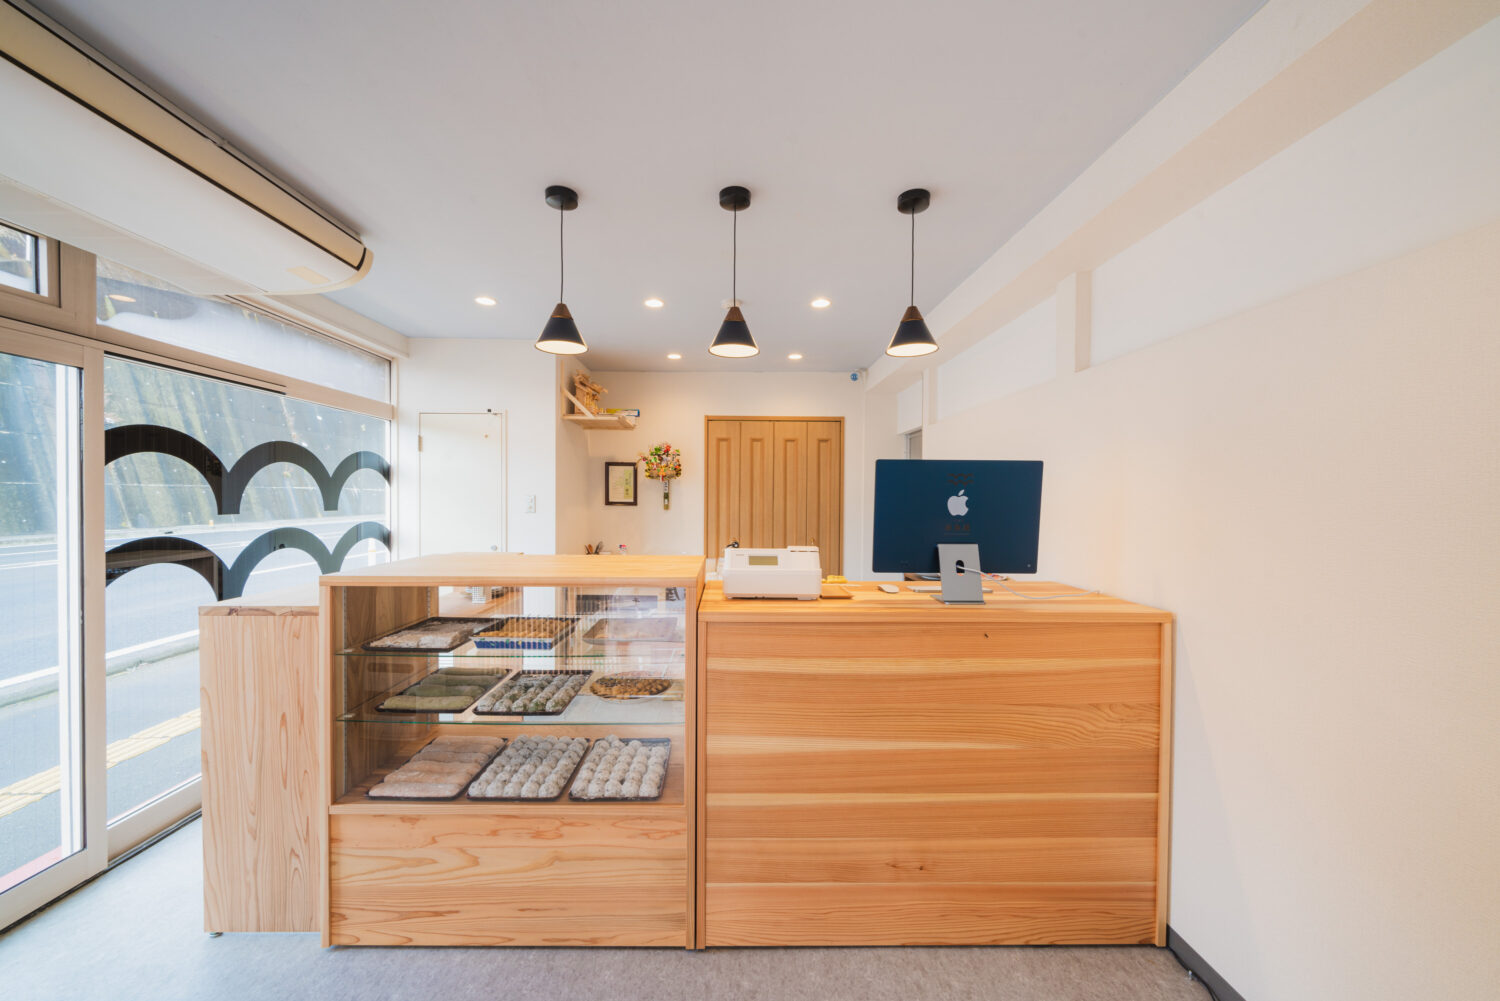 2022年12月に塩竈市にオープンしたばかりの餅菓子屋「しおがま 松島屋」のブランディングデザイン